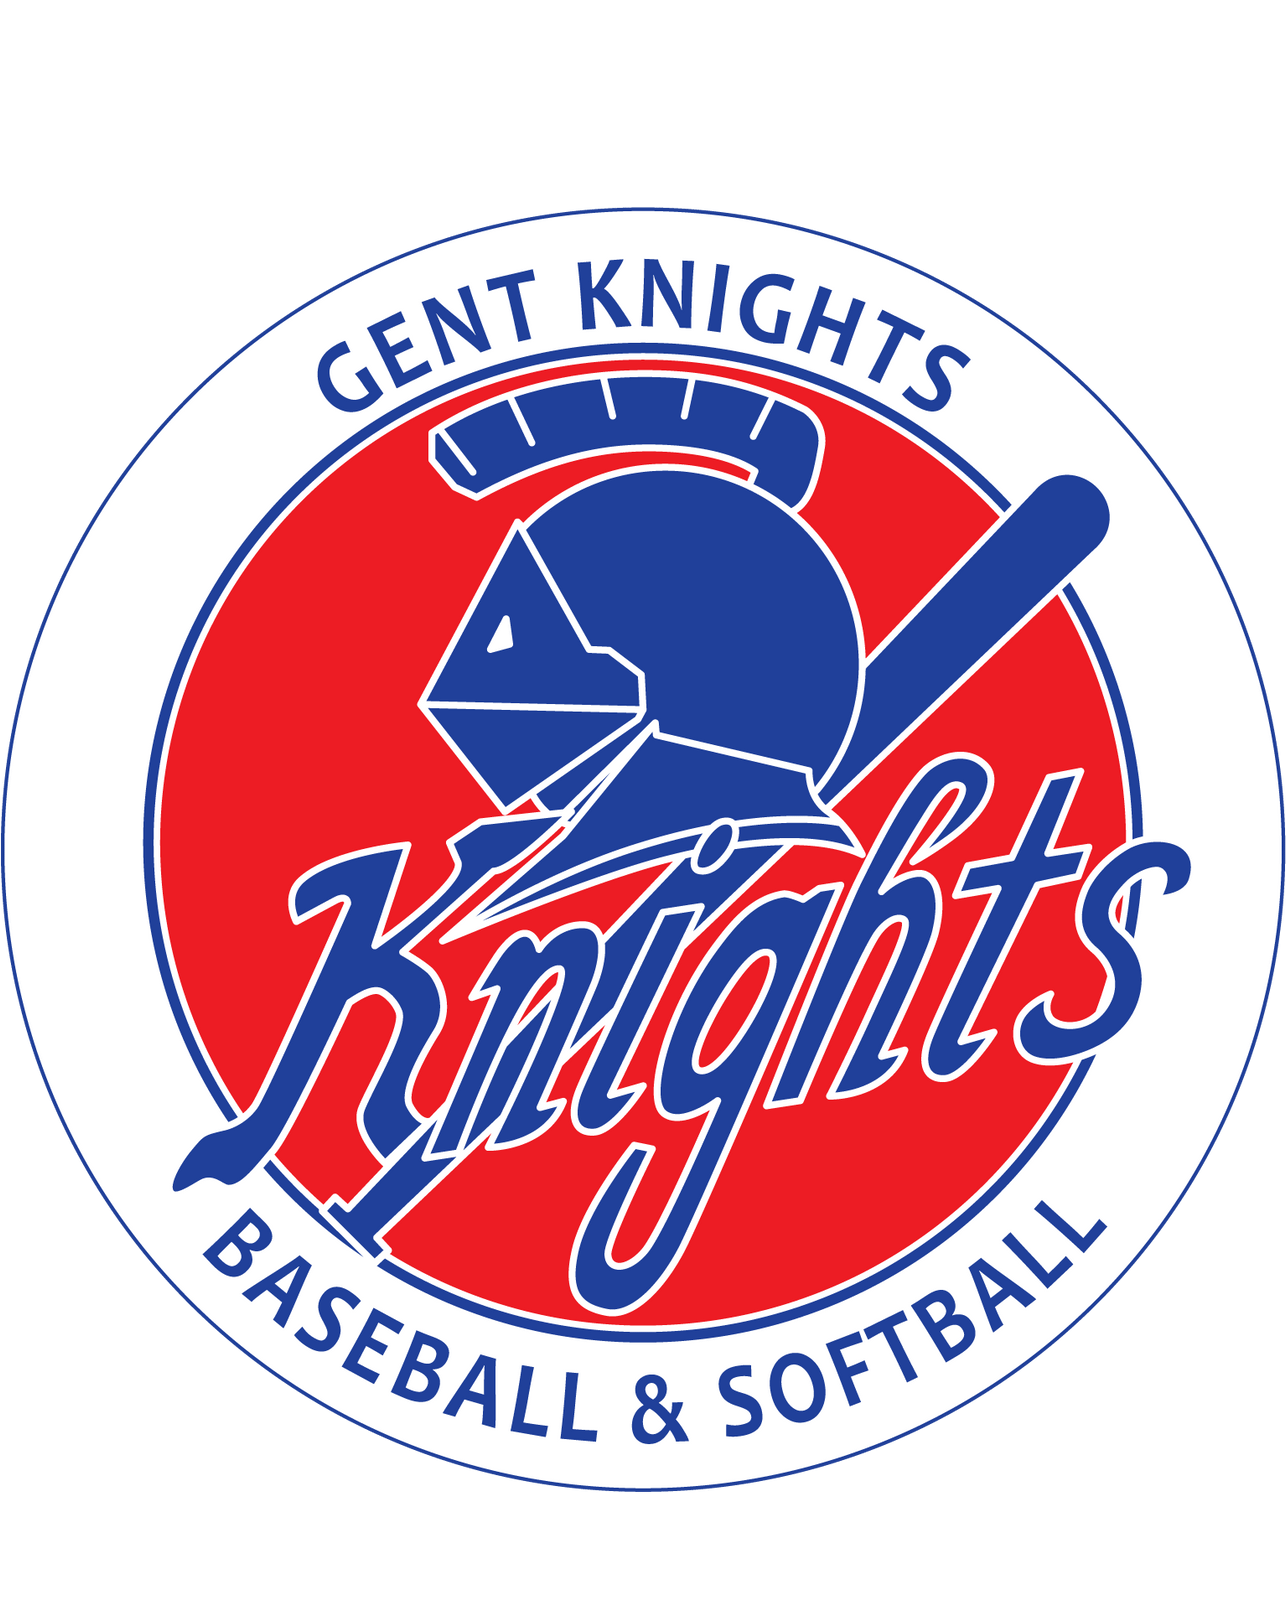 Gent Knights – Baseball en Softball